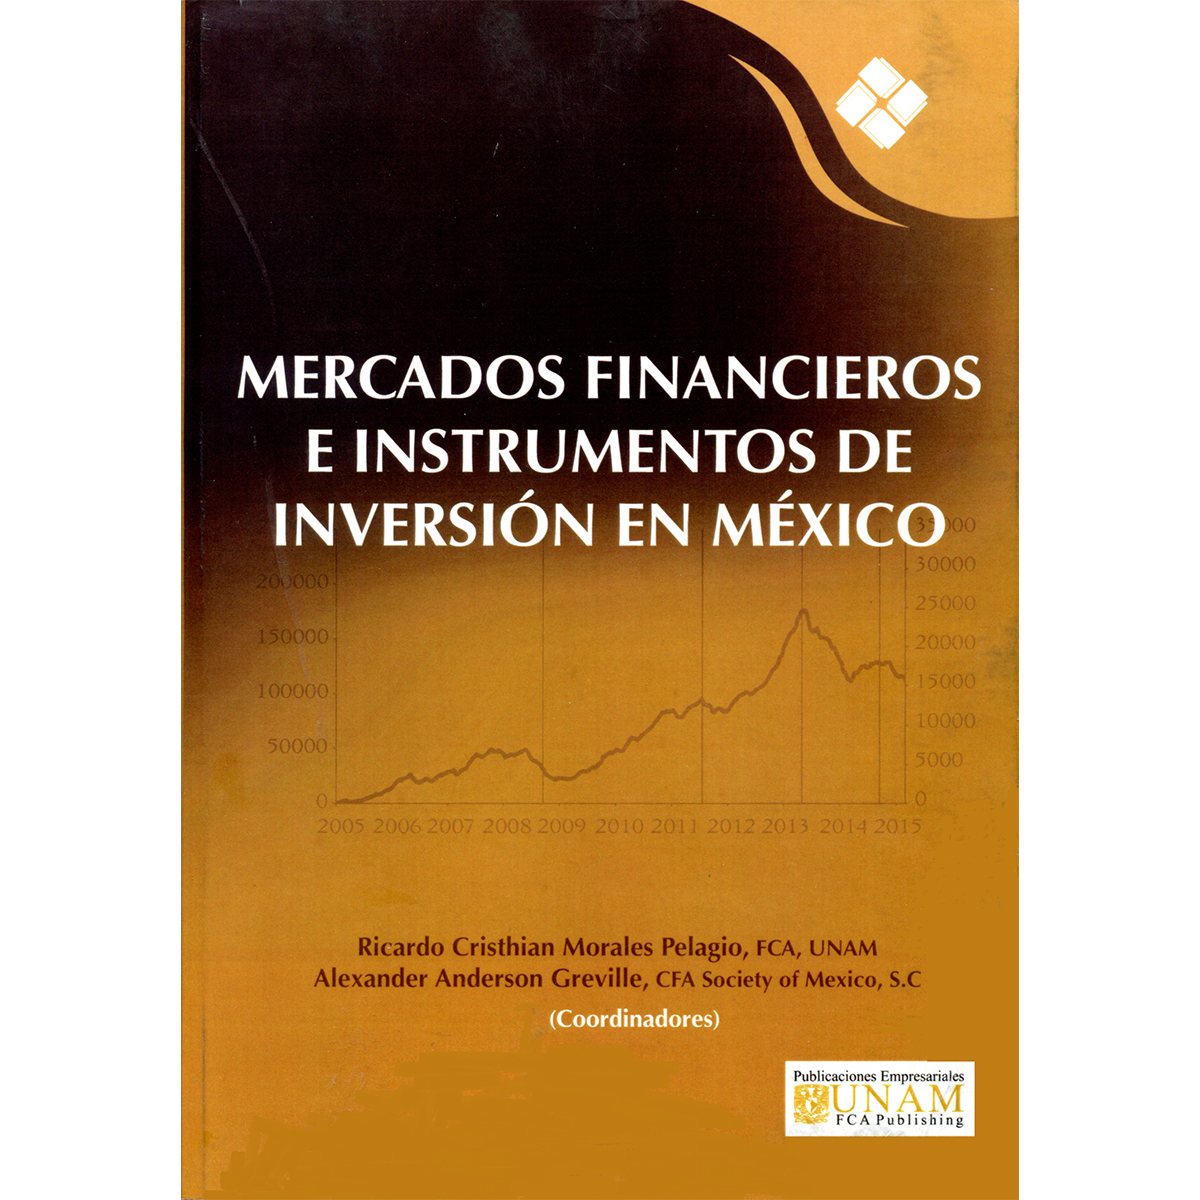 MERCADOS FINANCIEROS E INSTRUMENTOS DE INVERSIÓN EN MÉXICO